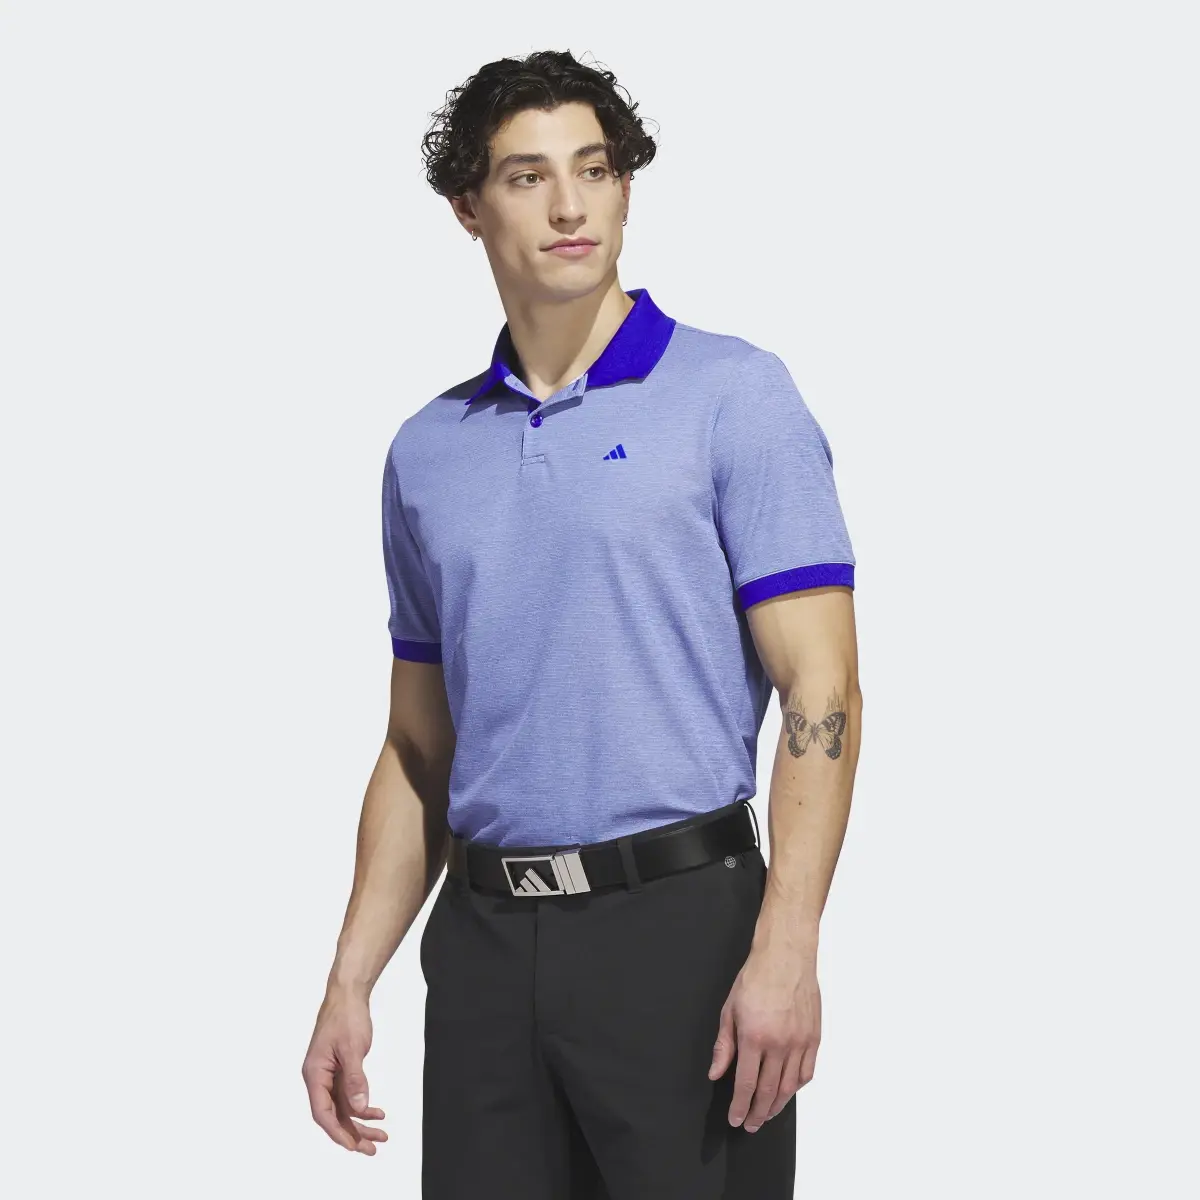 Adidas Ultimate365 No-Show Golf Polo Shirt. 2